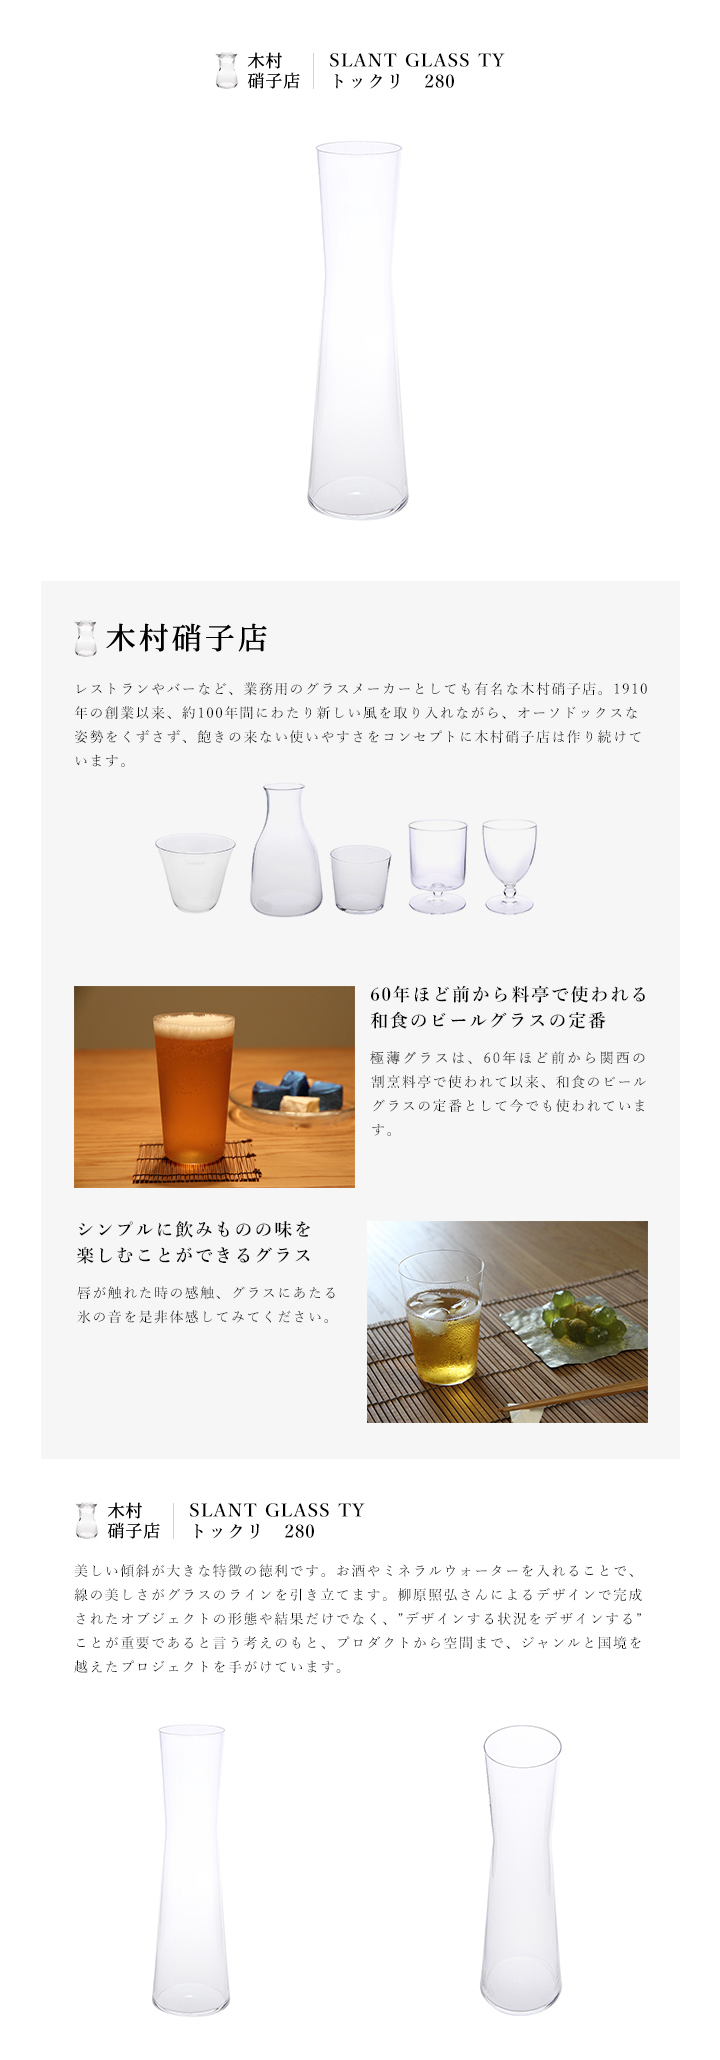 木村硝子店  トックリとグラスのセット  キムラガラステン  徳利